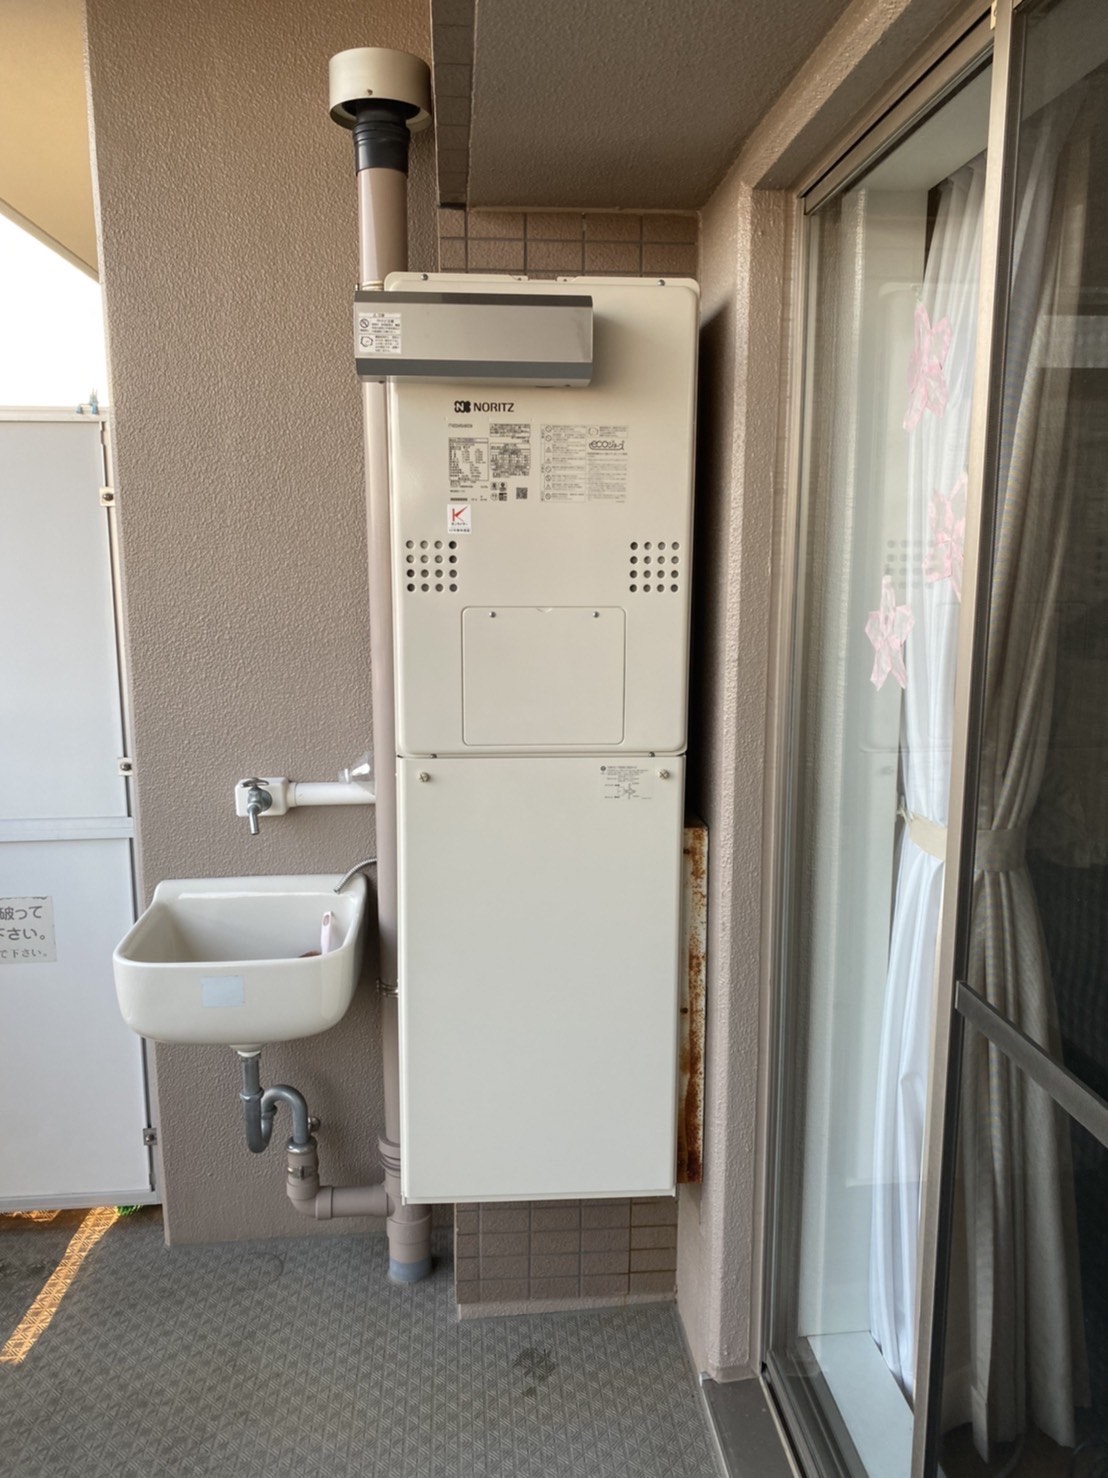 神奈川県横浜市栄区 U様 都市ガス ノーリツエコジョーズ GTH-C2460AW3H-1 BL 24号（フルオート）給湯暖房給湯器 交換工事 交換後